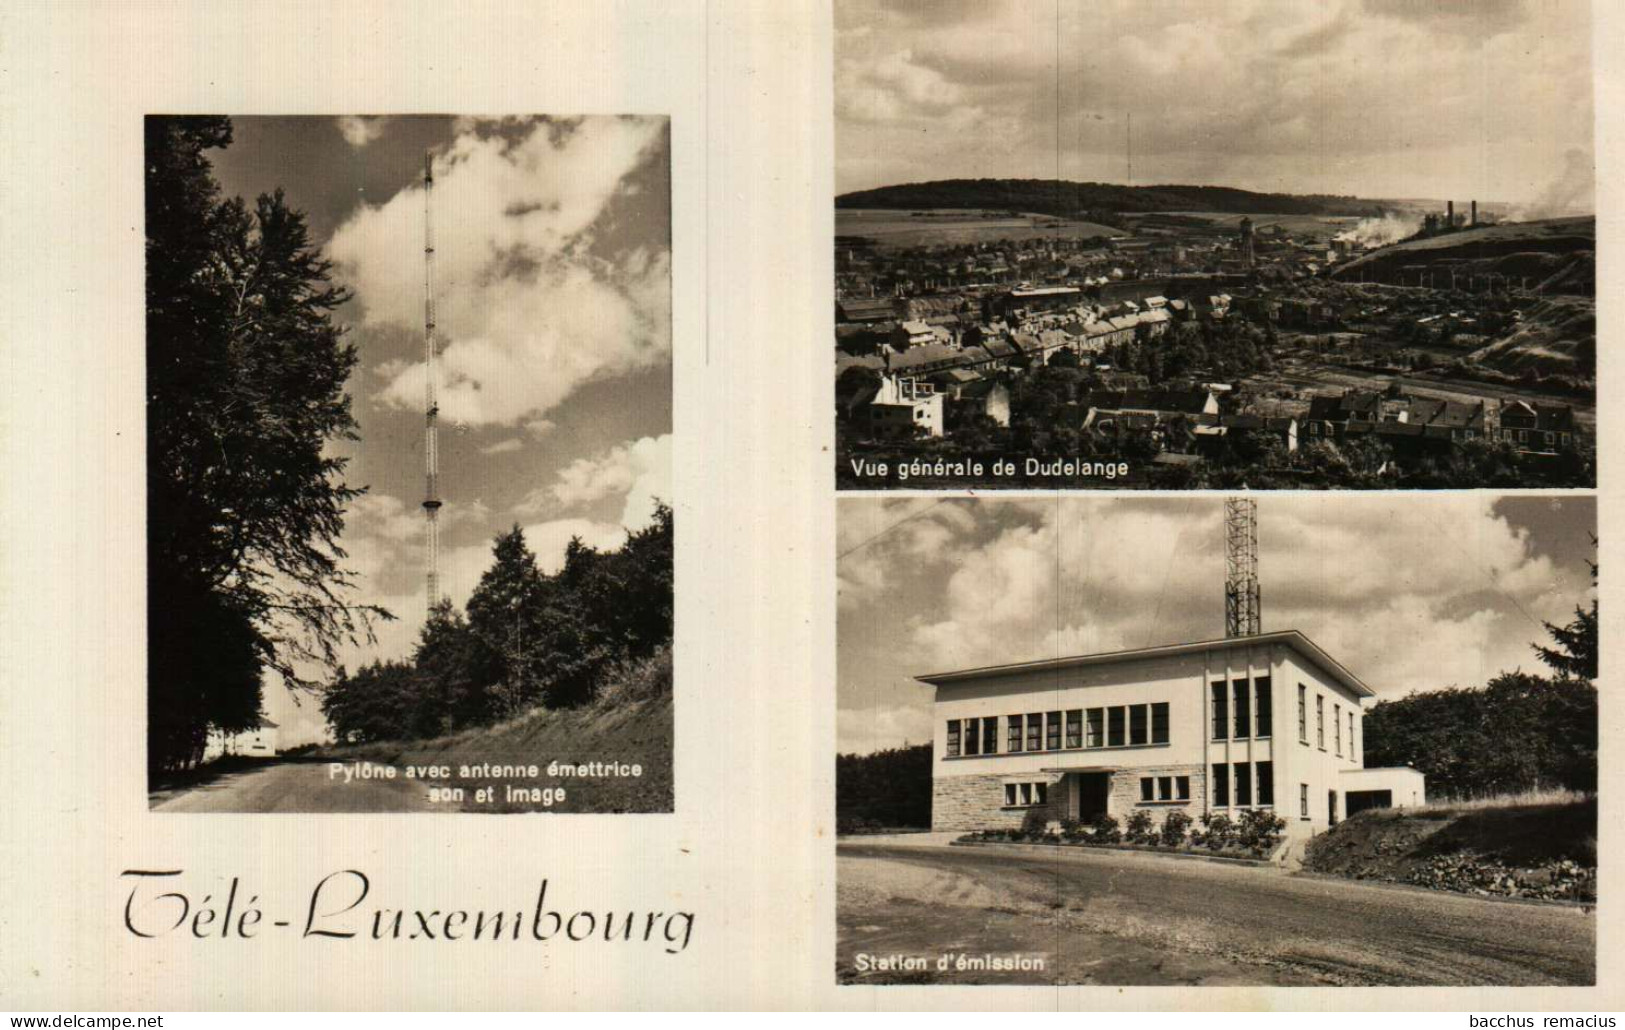 DUDELANGE -Télé-Luxembourg 1.Pylone Avec Antenne émettrice,Son Et Image 2.Vue Générale De Dudelange 3.Station D'Émission - Dudelange